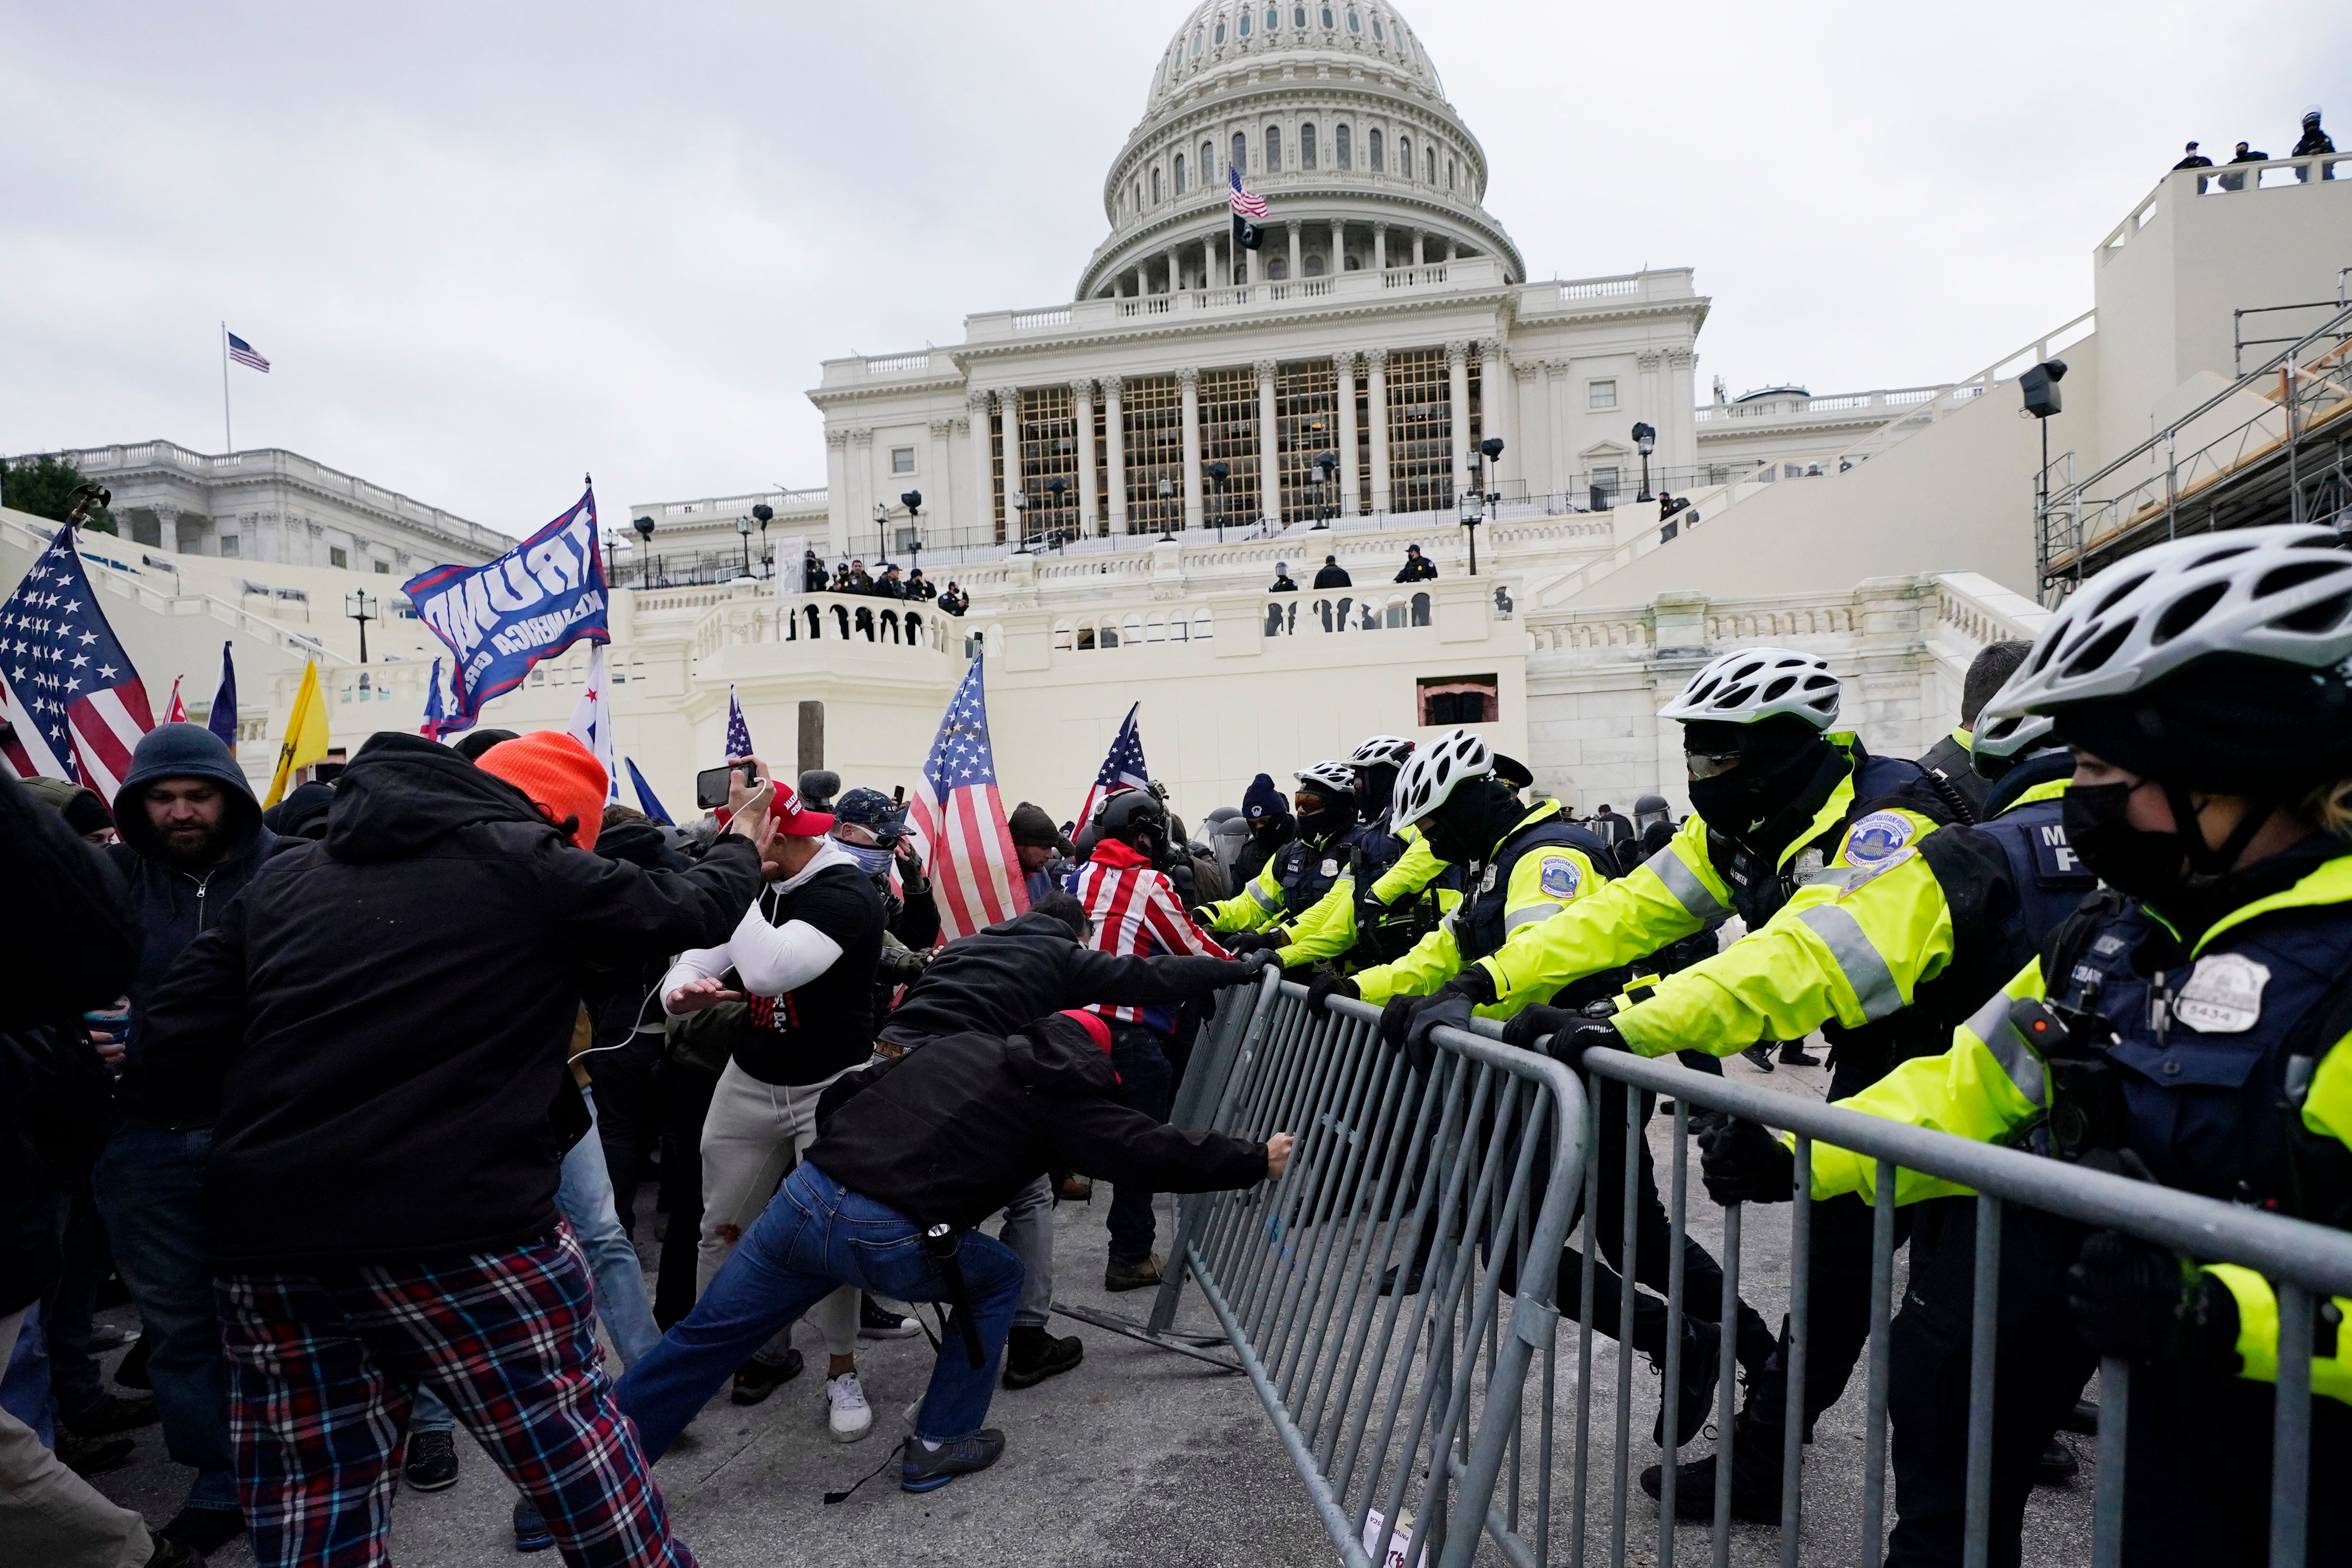 ARCHIVO - Simpatizantes del presidente Donald Trump tratan de abrirse paso a la fuerza al Capitolio en Washington, el 6 de enero de 2021. (AP Foto/Julio Cortez, Archivo)